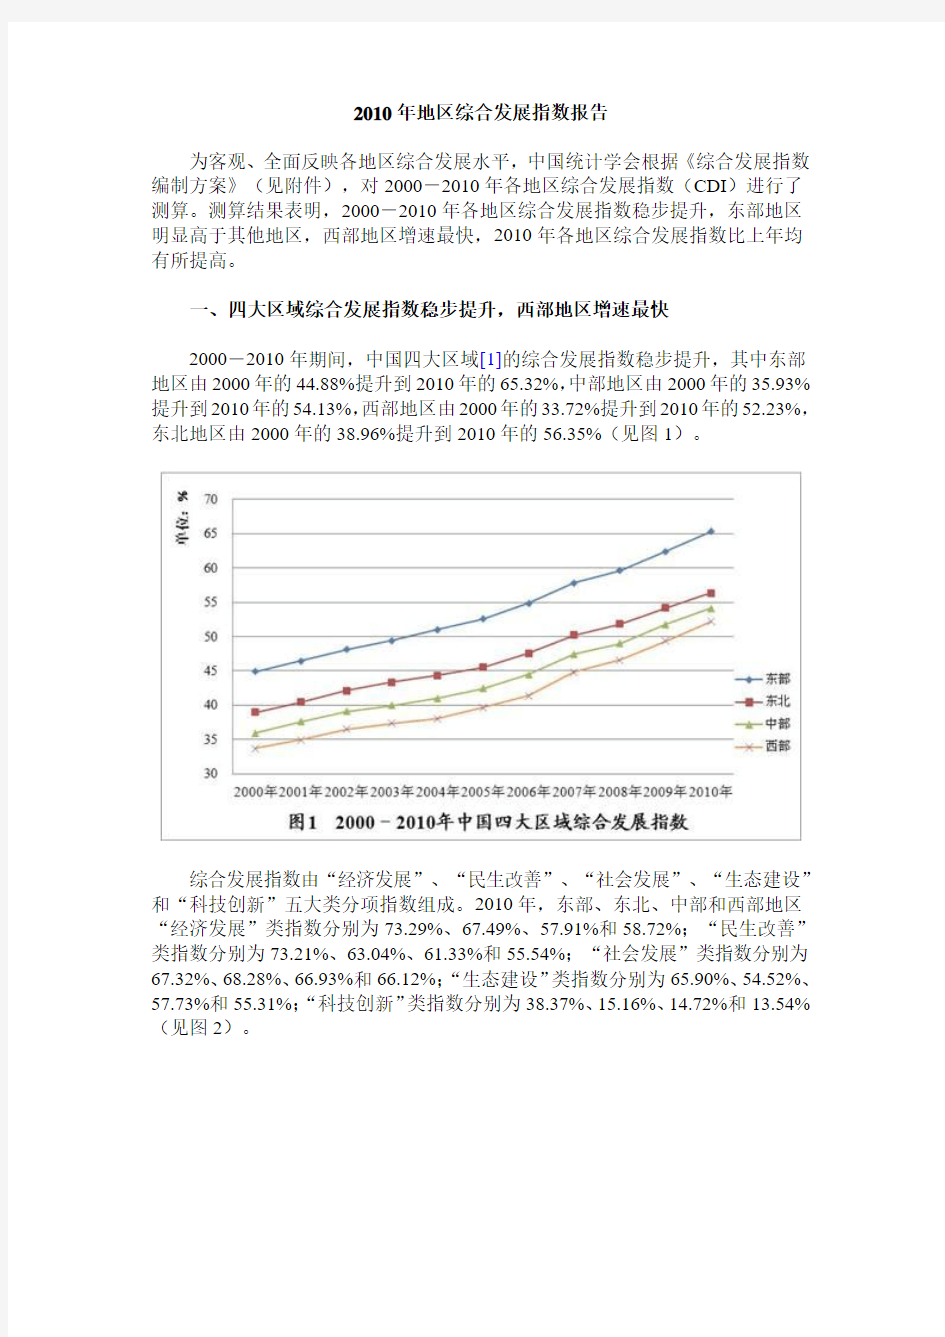 中国地区综合发展指数